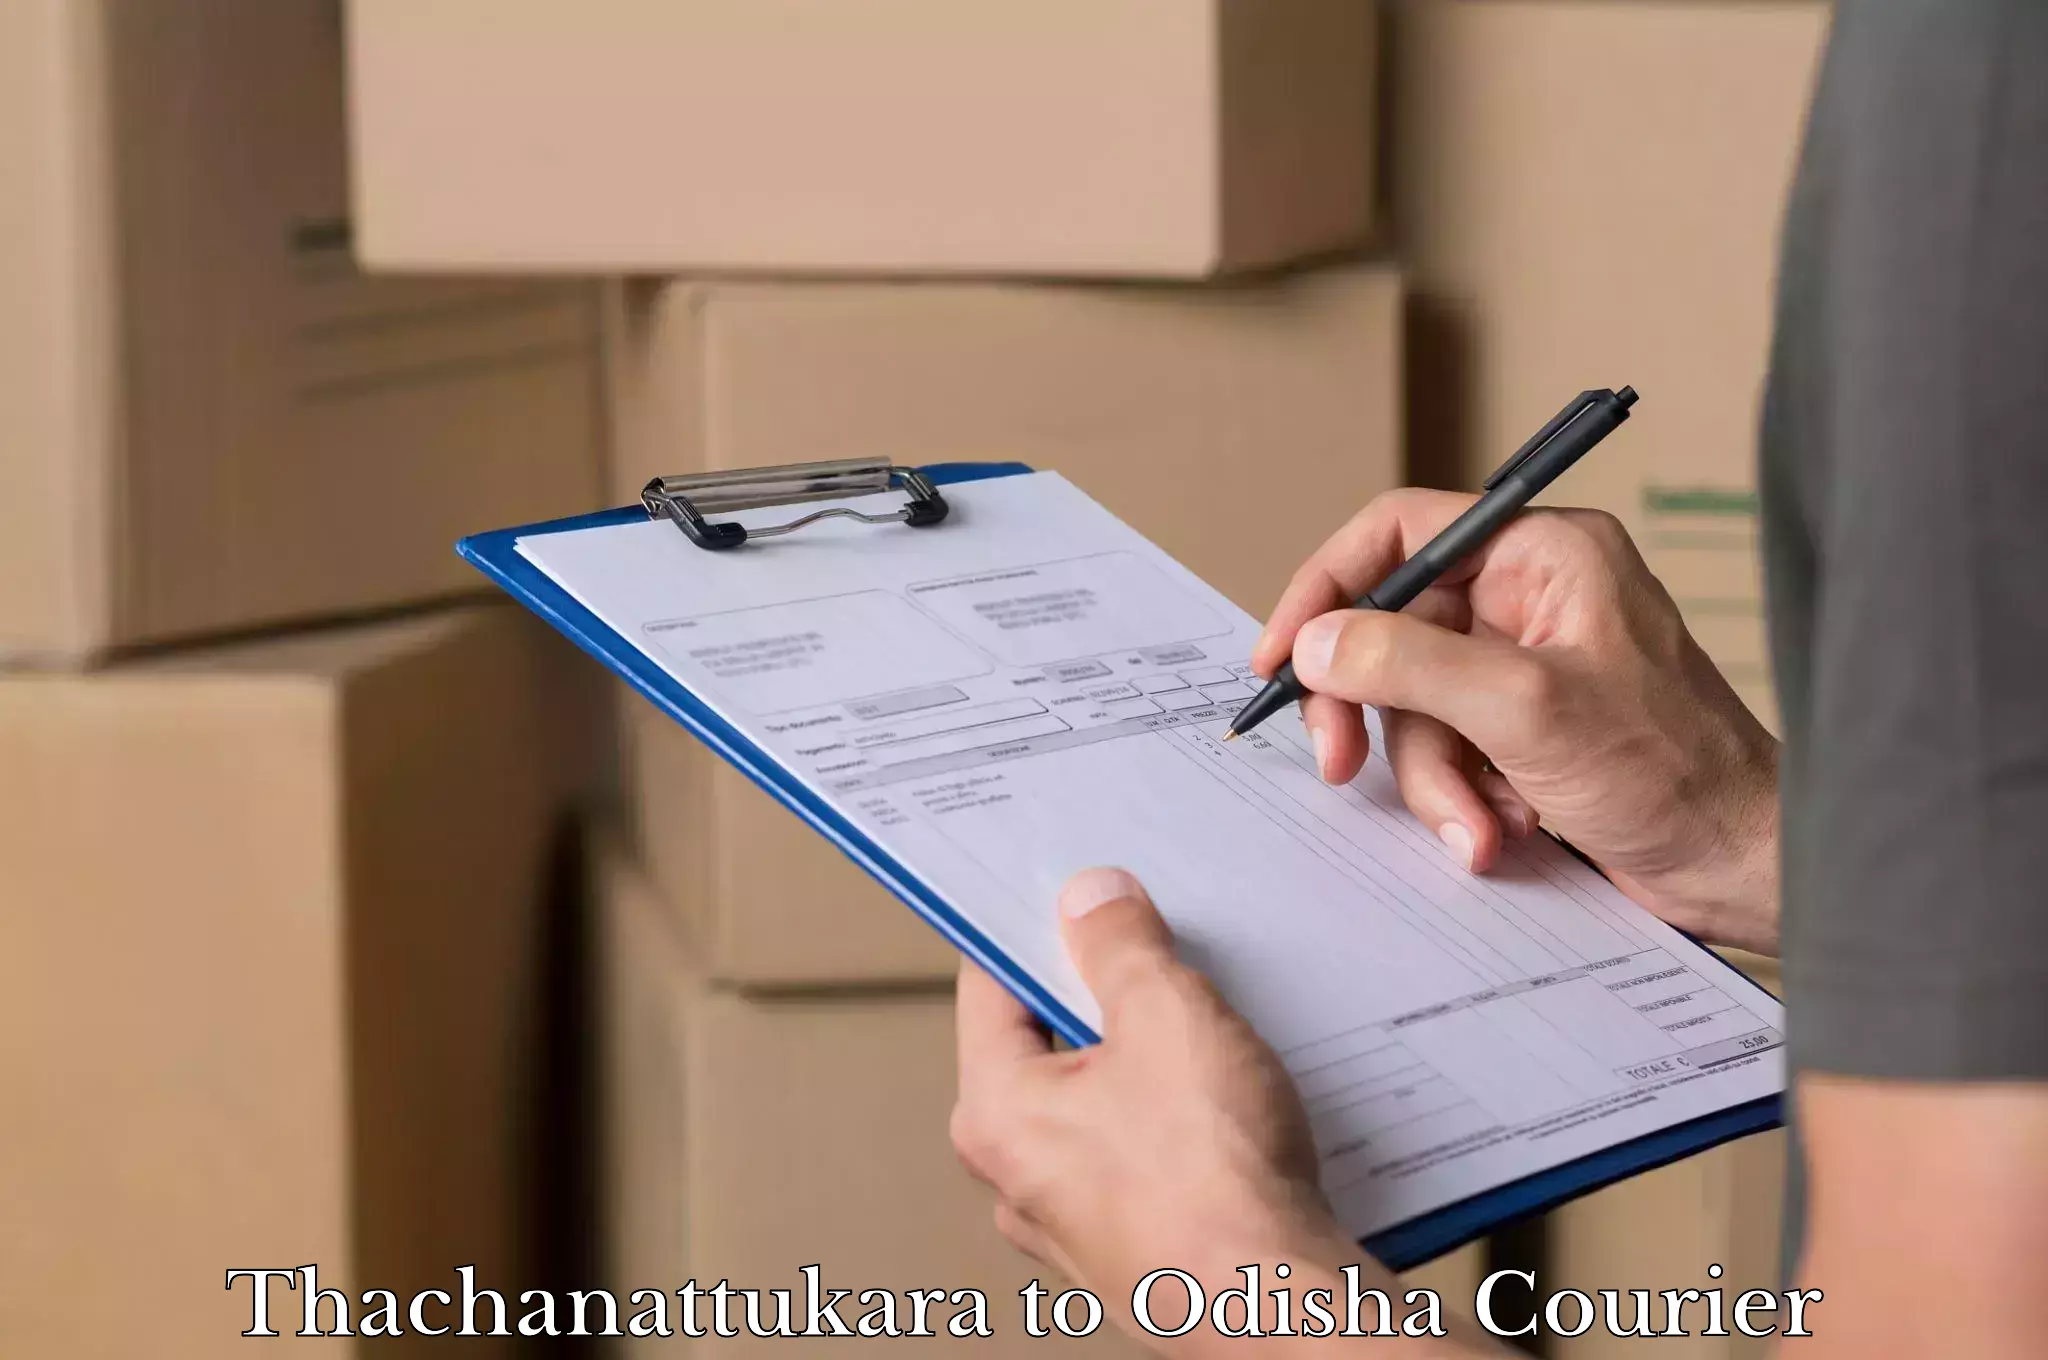 Baggage courier operations Thachanattukara to Odisha